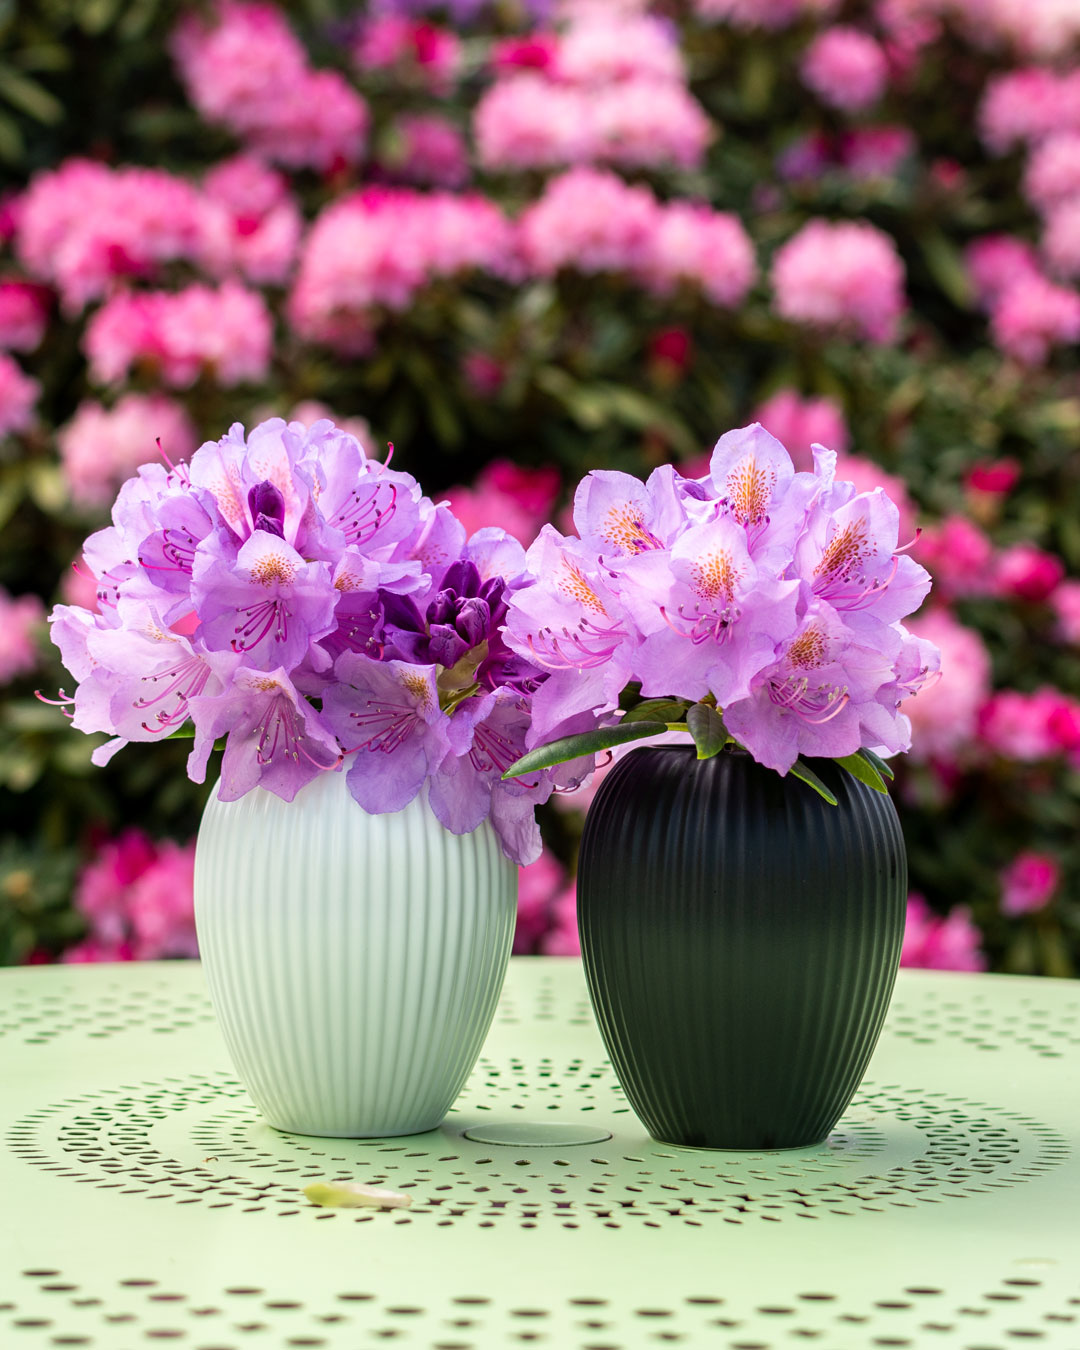 Lille sort og lille hvid vase fra Michael Andersen Keramik med rhododendron blomster foran stor rhododendron i haven på lysegrønt havevbord